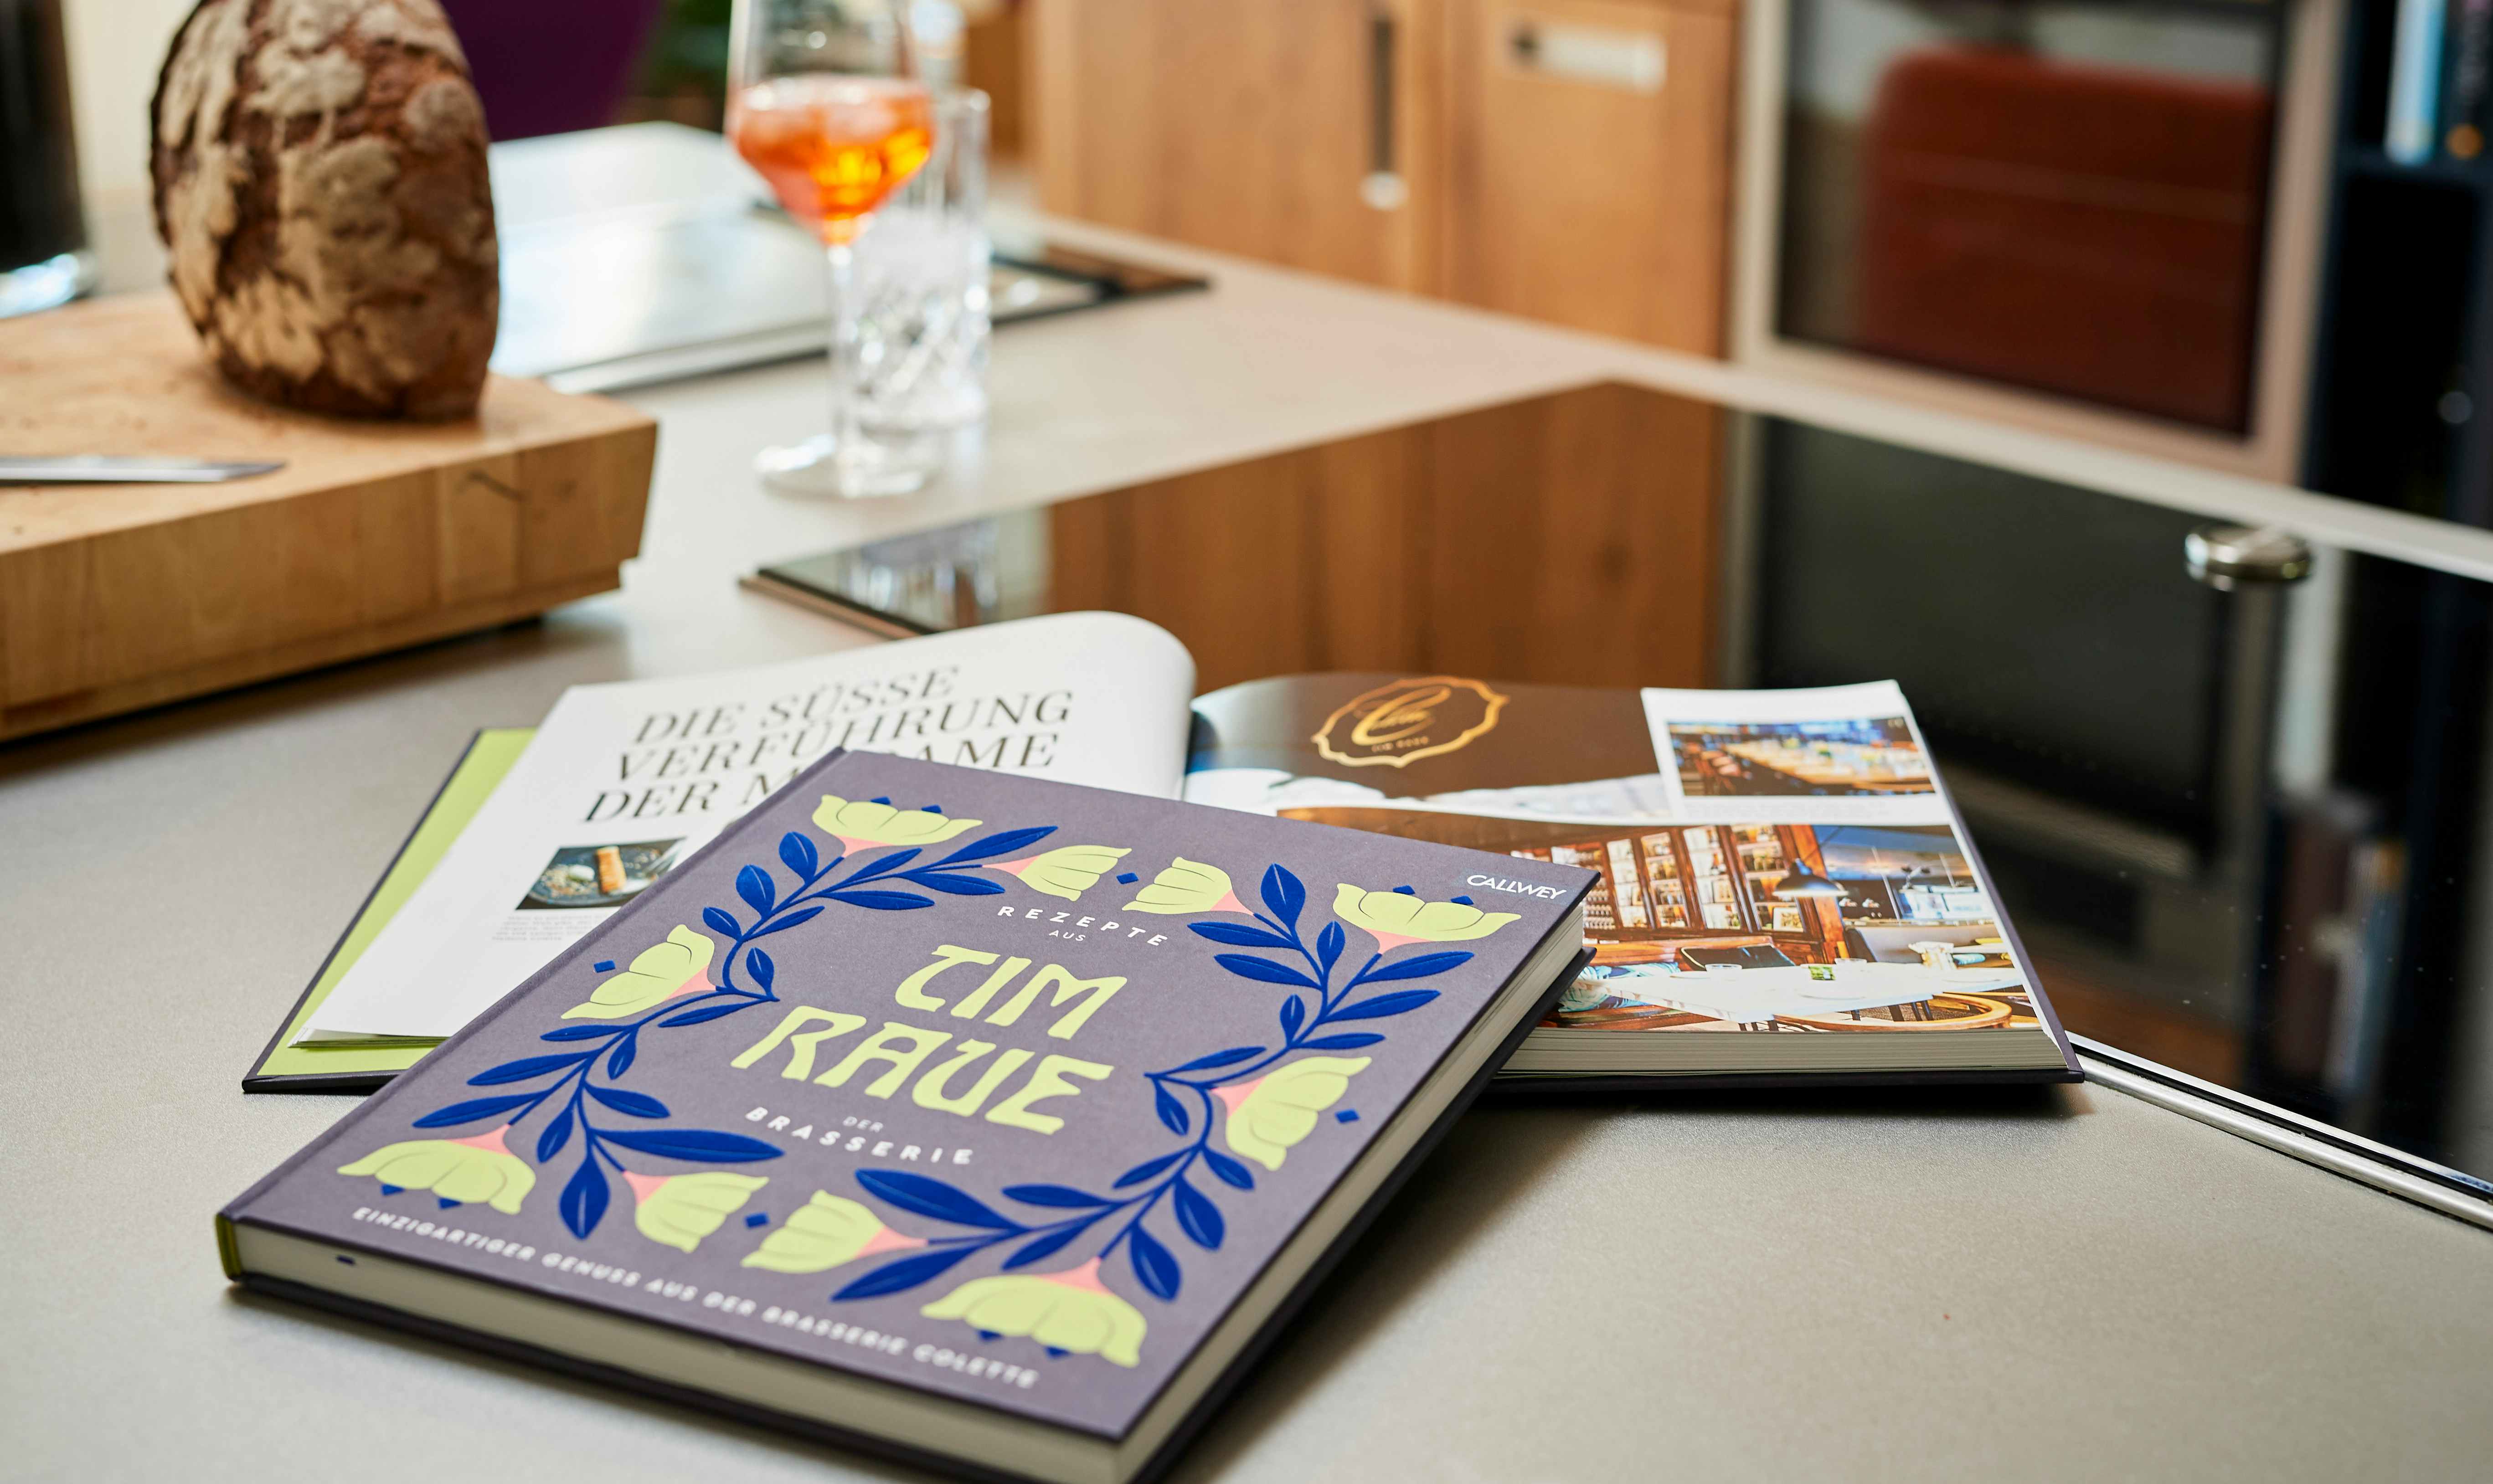 Das Kochbuch »Tim Raue – Rezepte aus der Brasserie« auf der Küchenarbeitsfläche. Ein Glas Apperol und ein Laib Brot im Hintergrund.